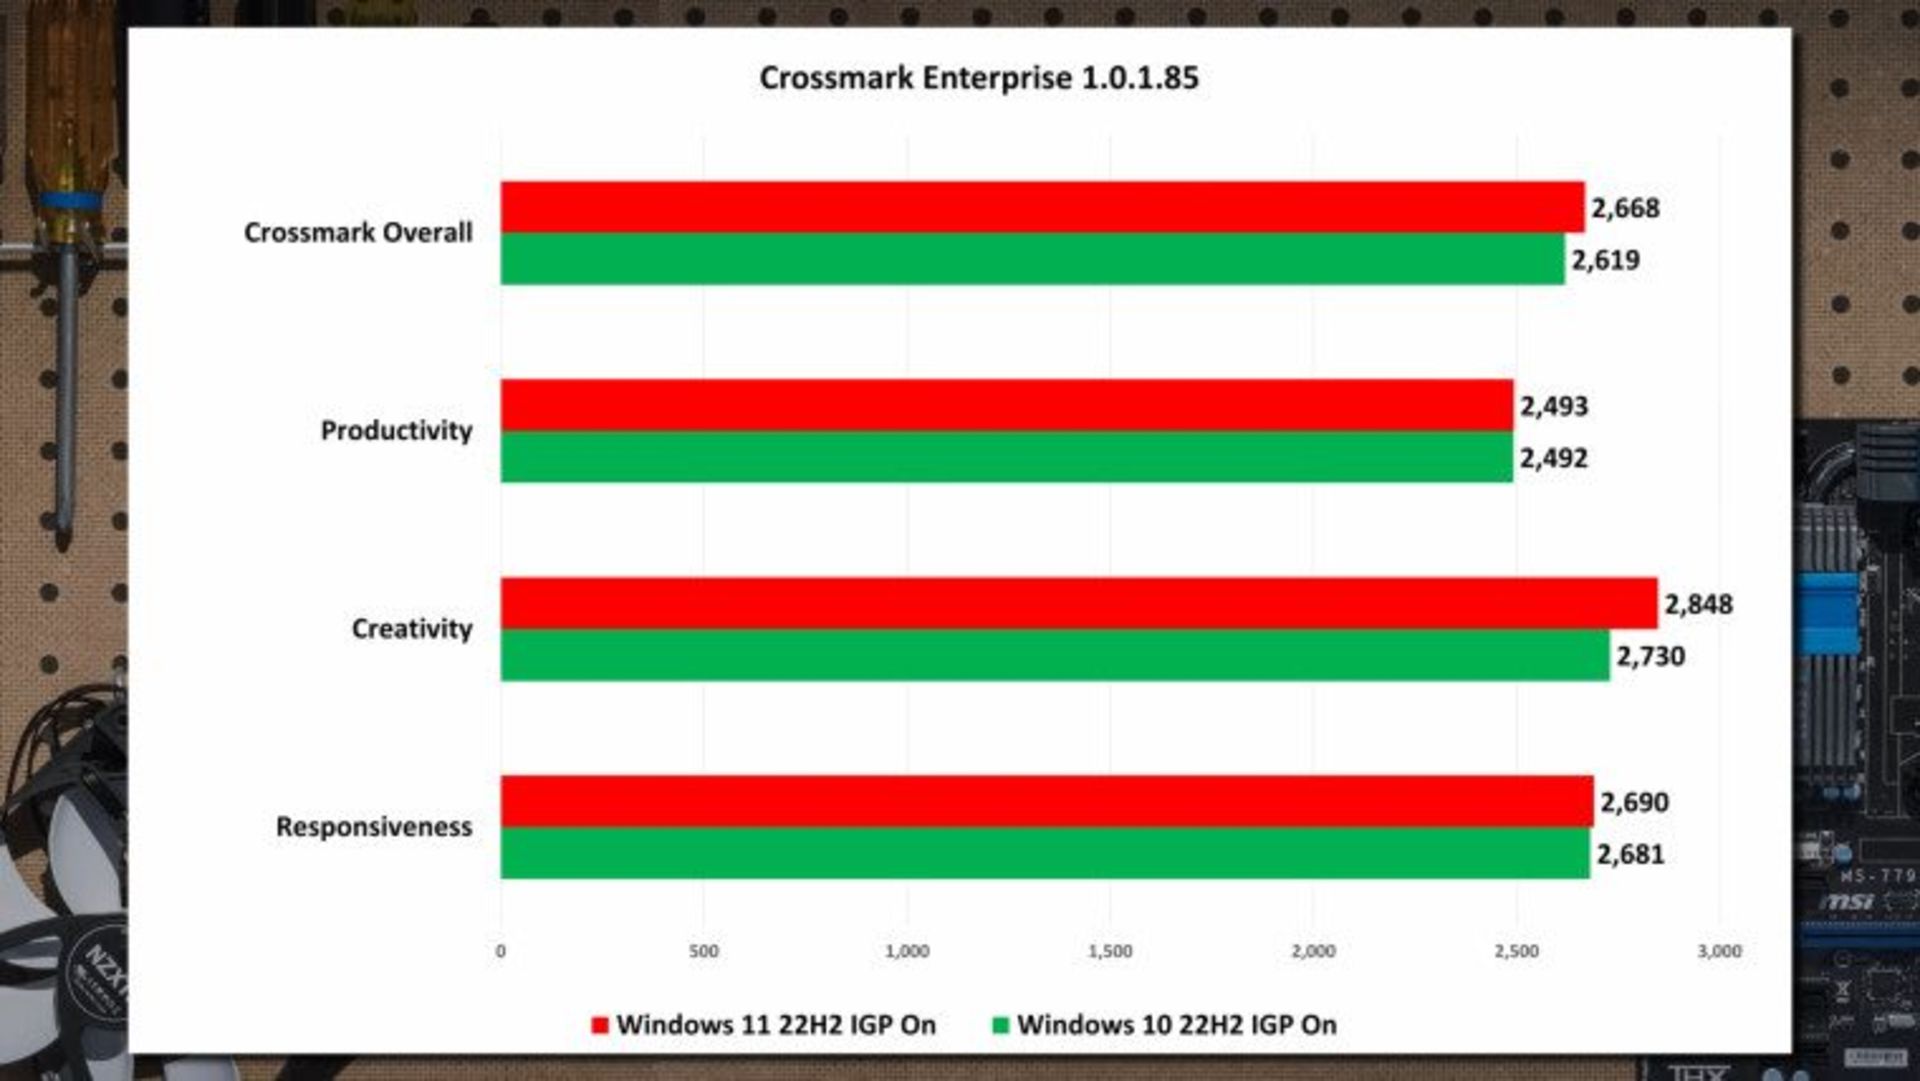 مقایسه عملکرد ویندوز ۱۰ و ۱۱ در معیار crossmark